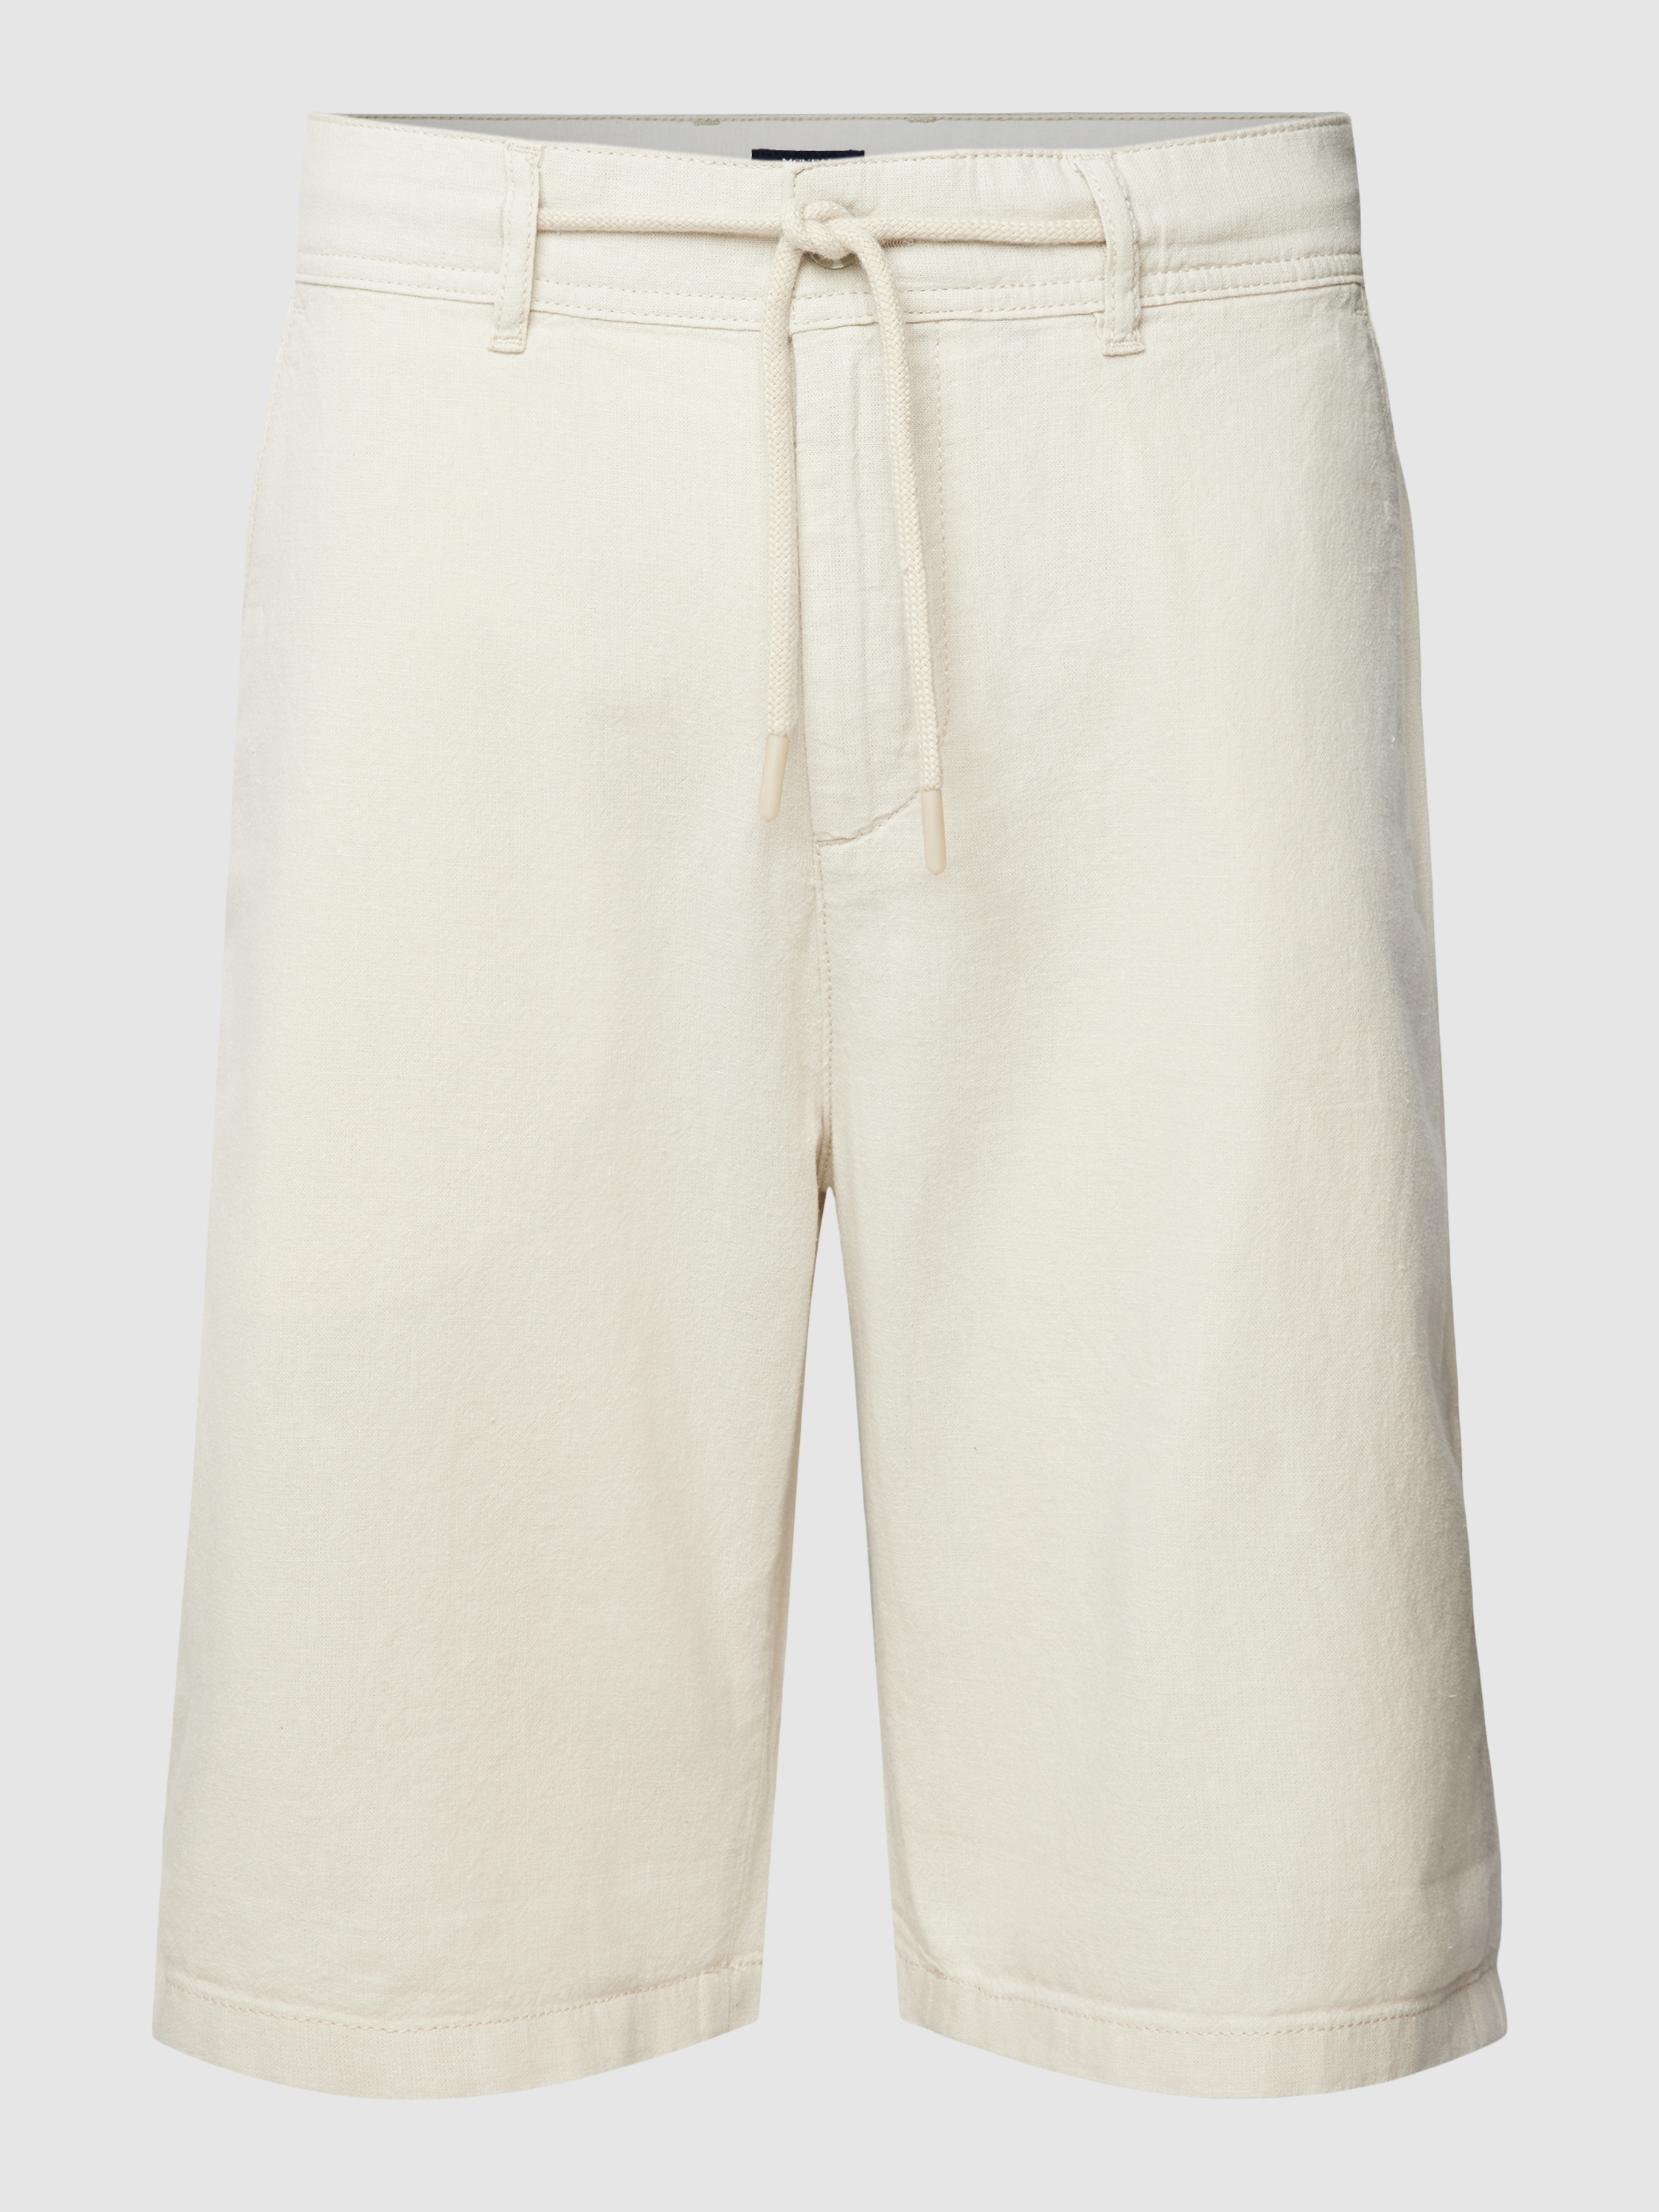 Повседневные шорты мужские McNeal 1768494 белые 2XL (доставка из-за рубежа)